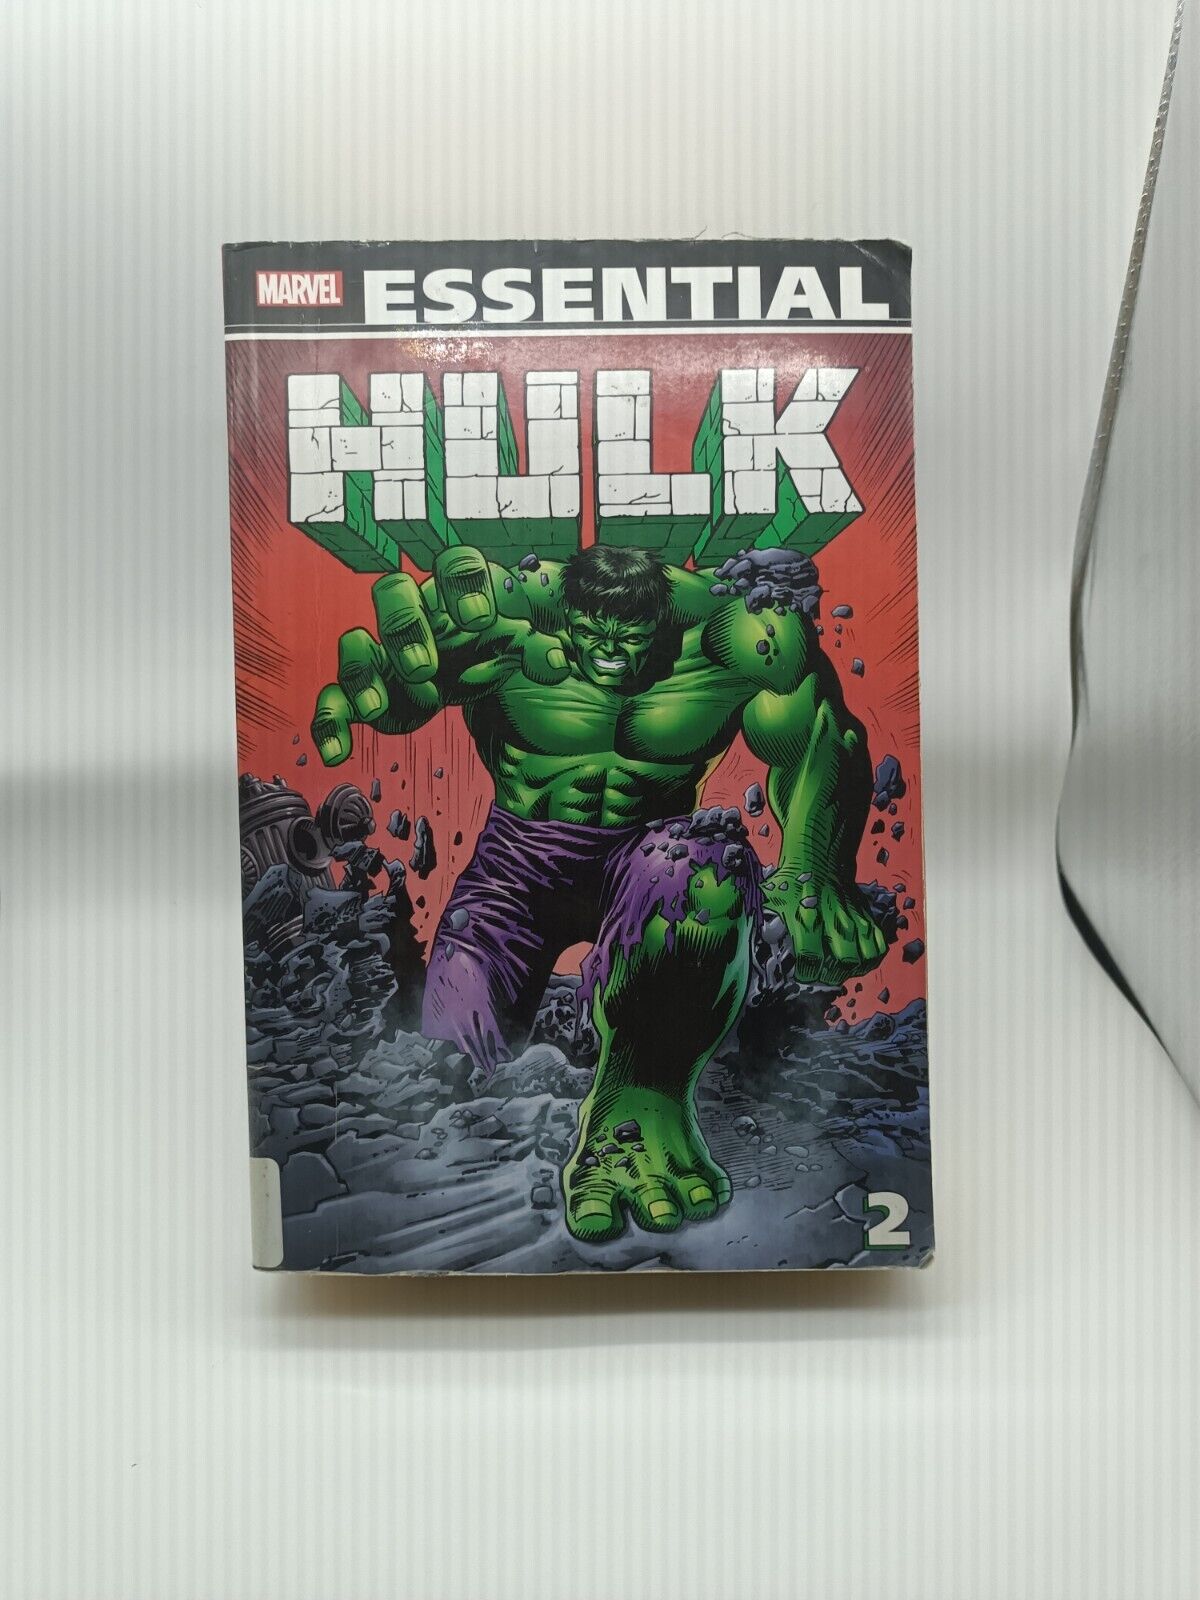 Marvel Essential Hulk Vol 2 (2nd printing) Stan Lee Jack Kirby Ex-Library